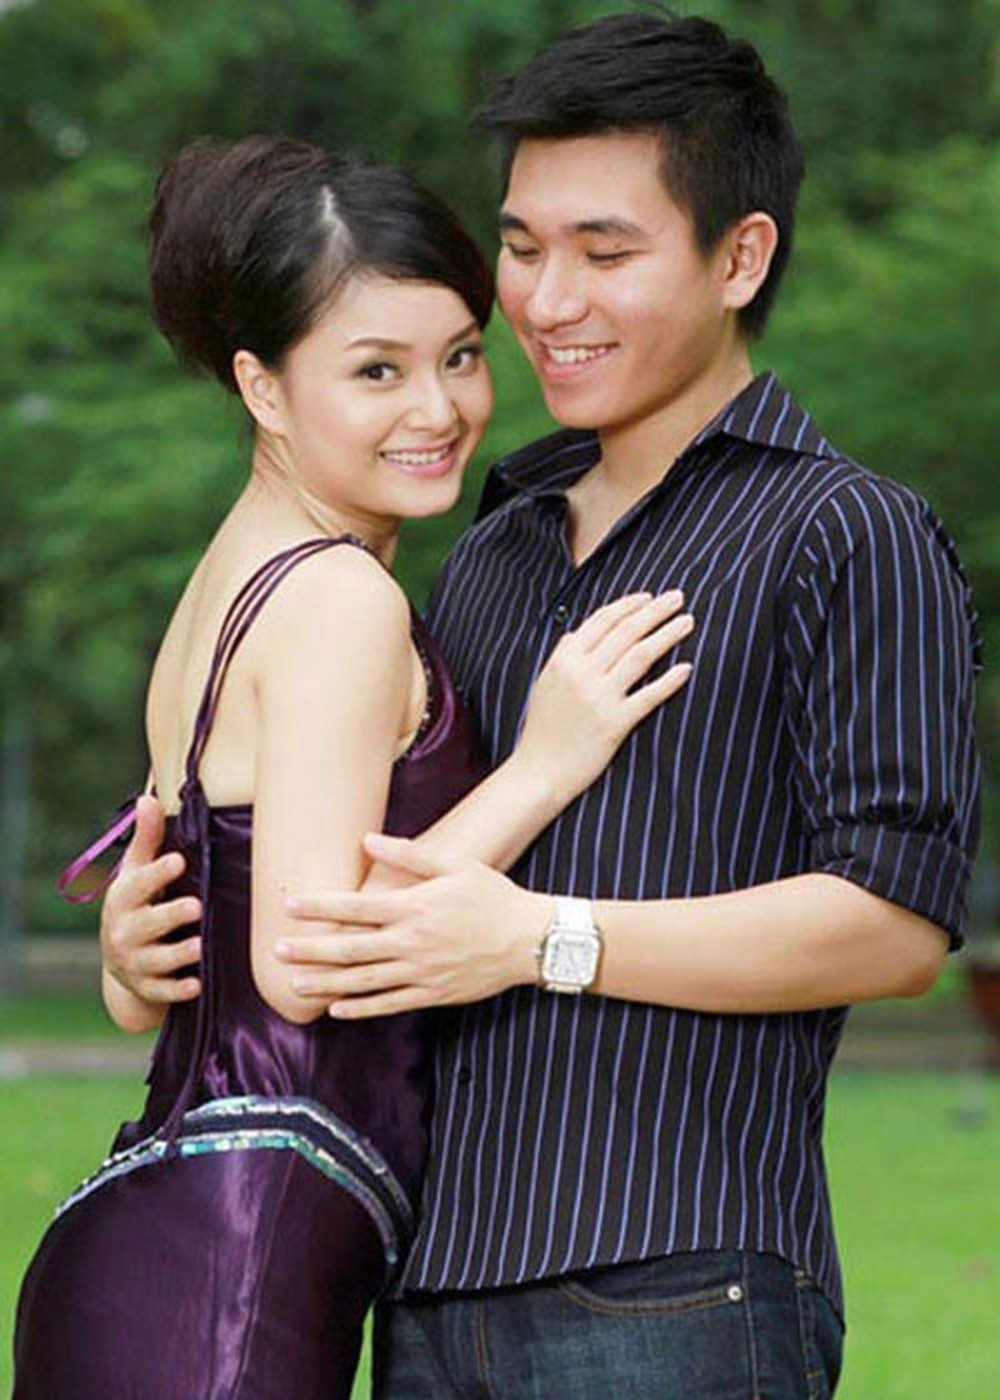 Lan Phương: Người đẹp mê trai Tây và hạnh phúc viên mãn bên chồng ngoại quốc ở tuổi 39 - Ảnh 7.